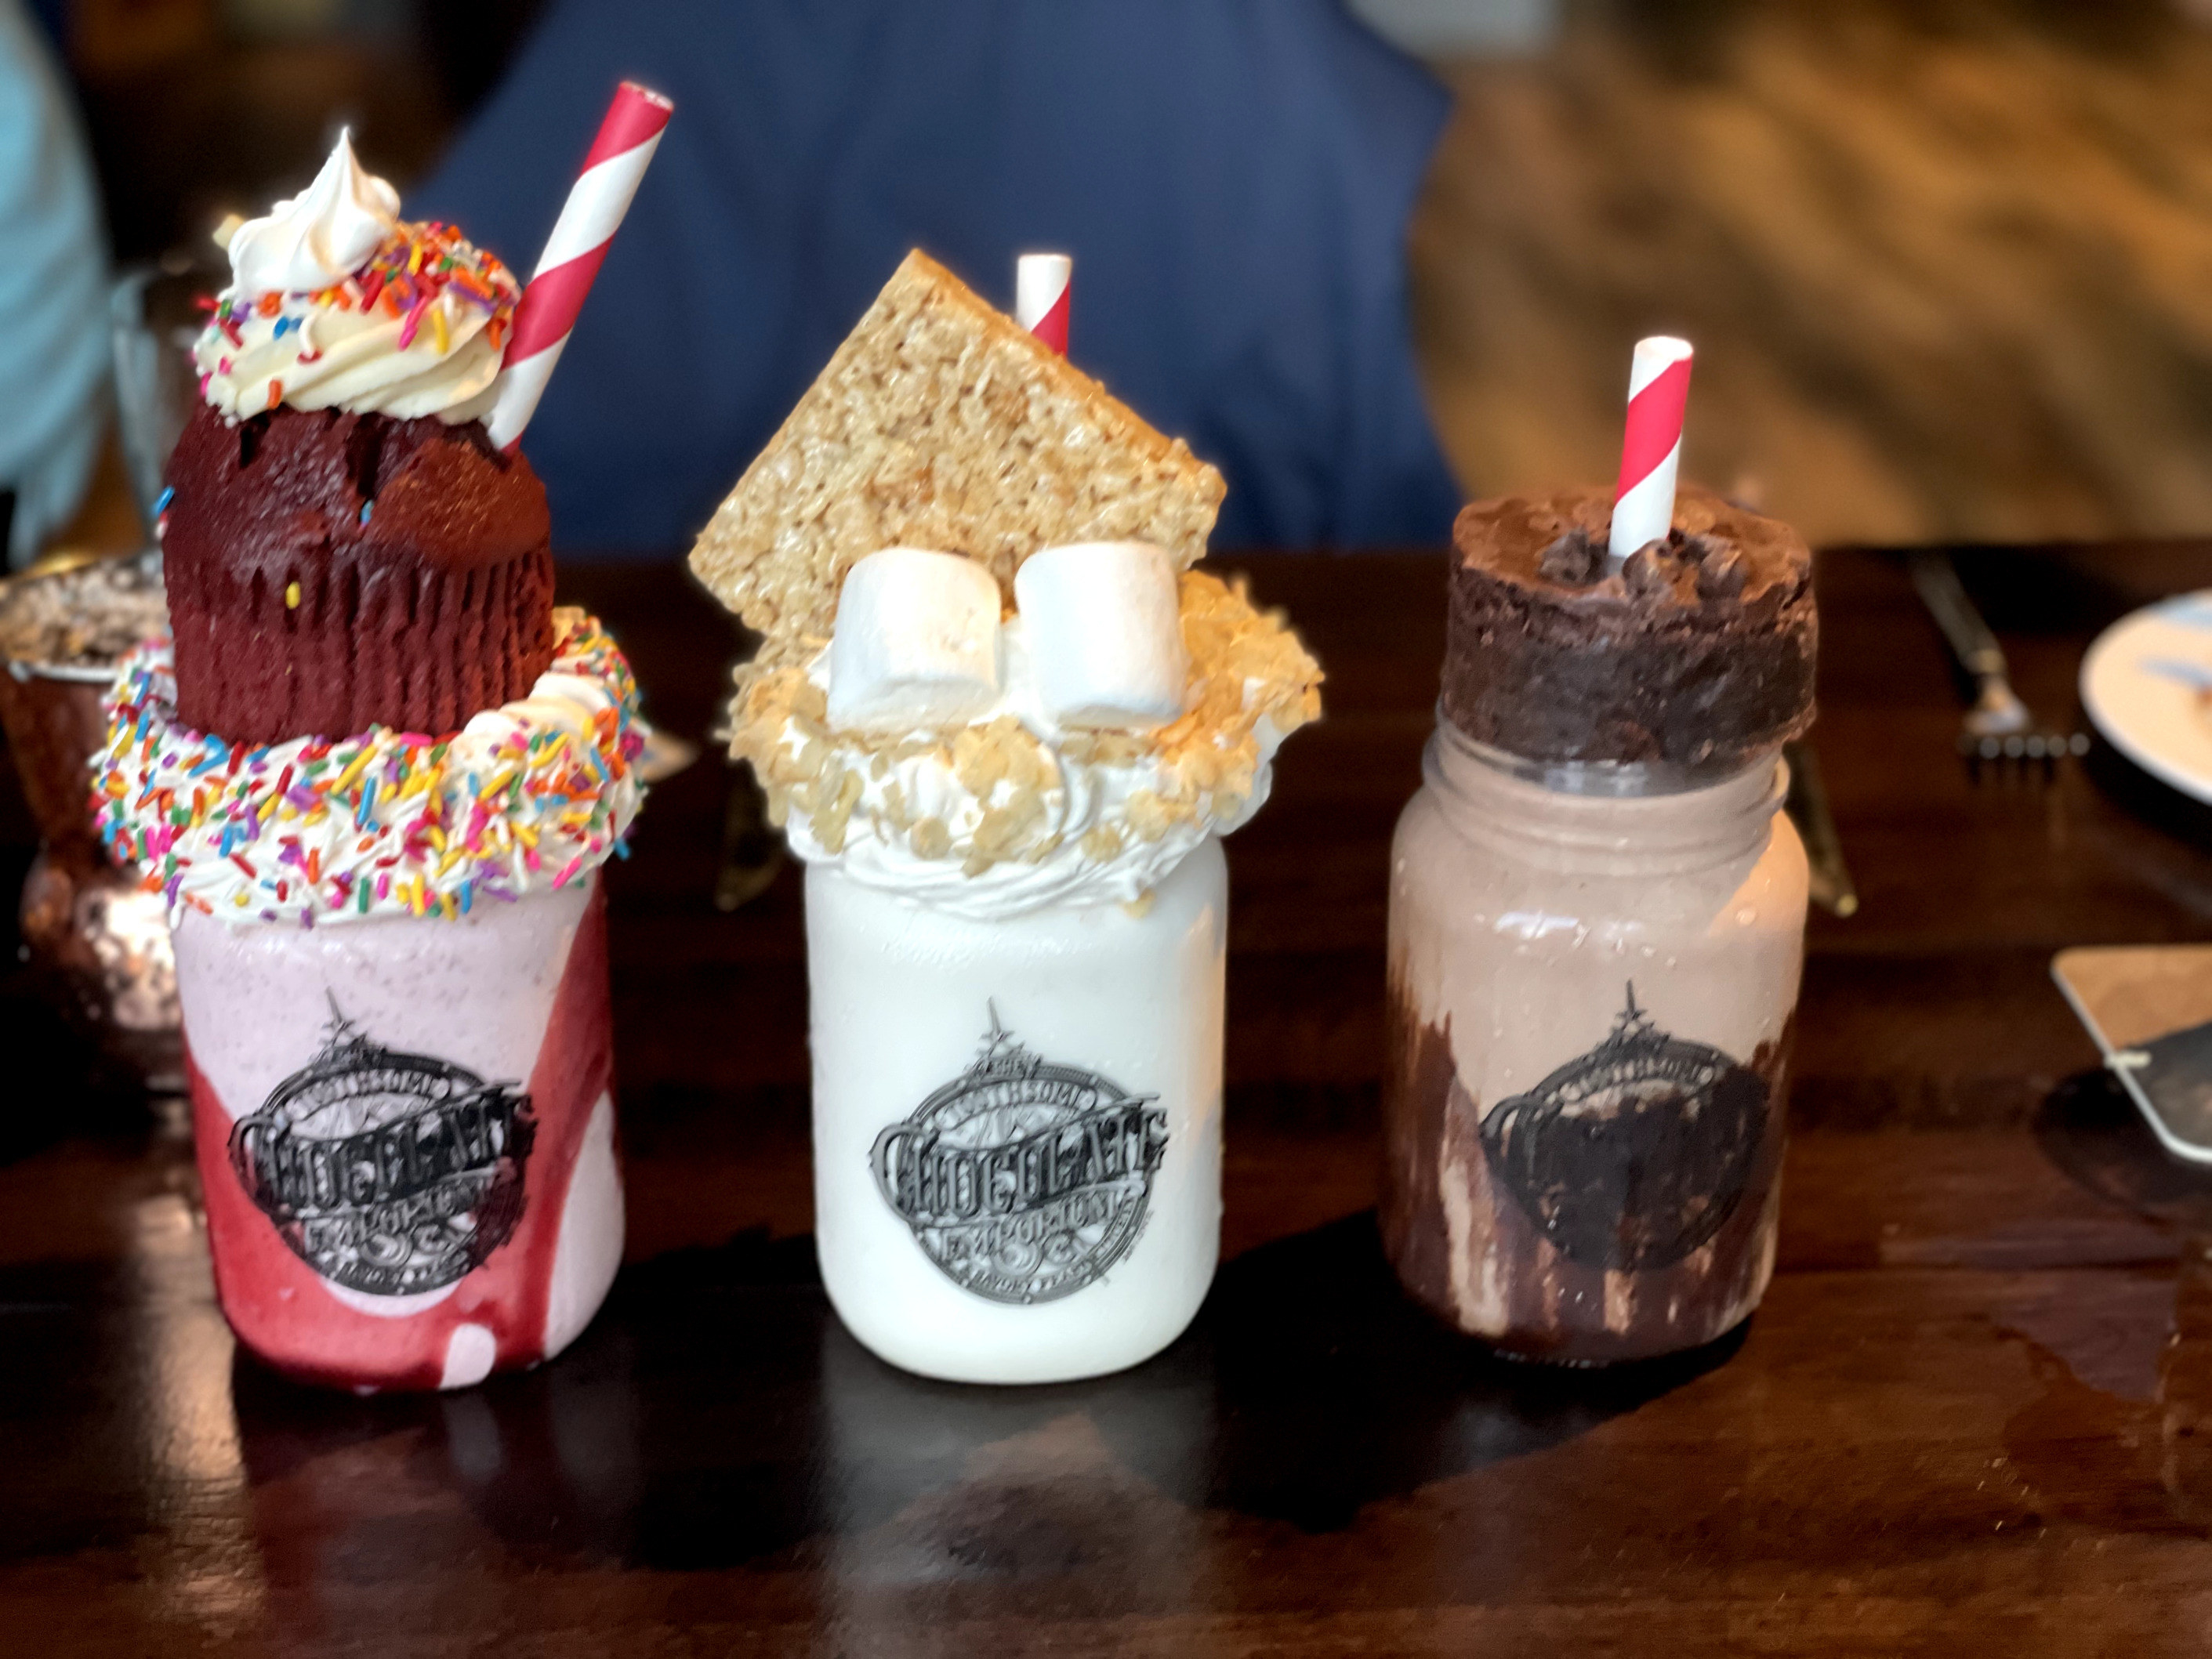 A photo of three milkshakes on a table